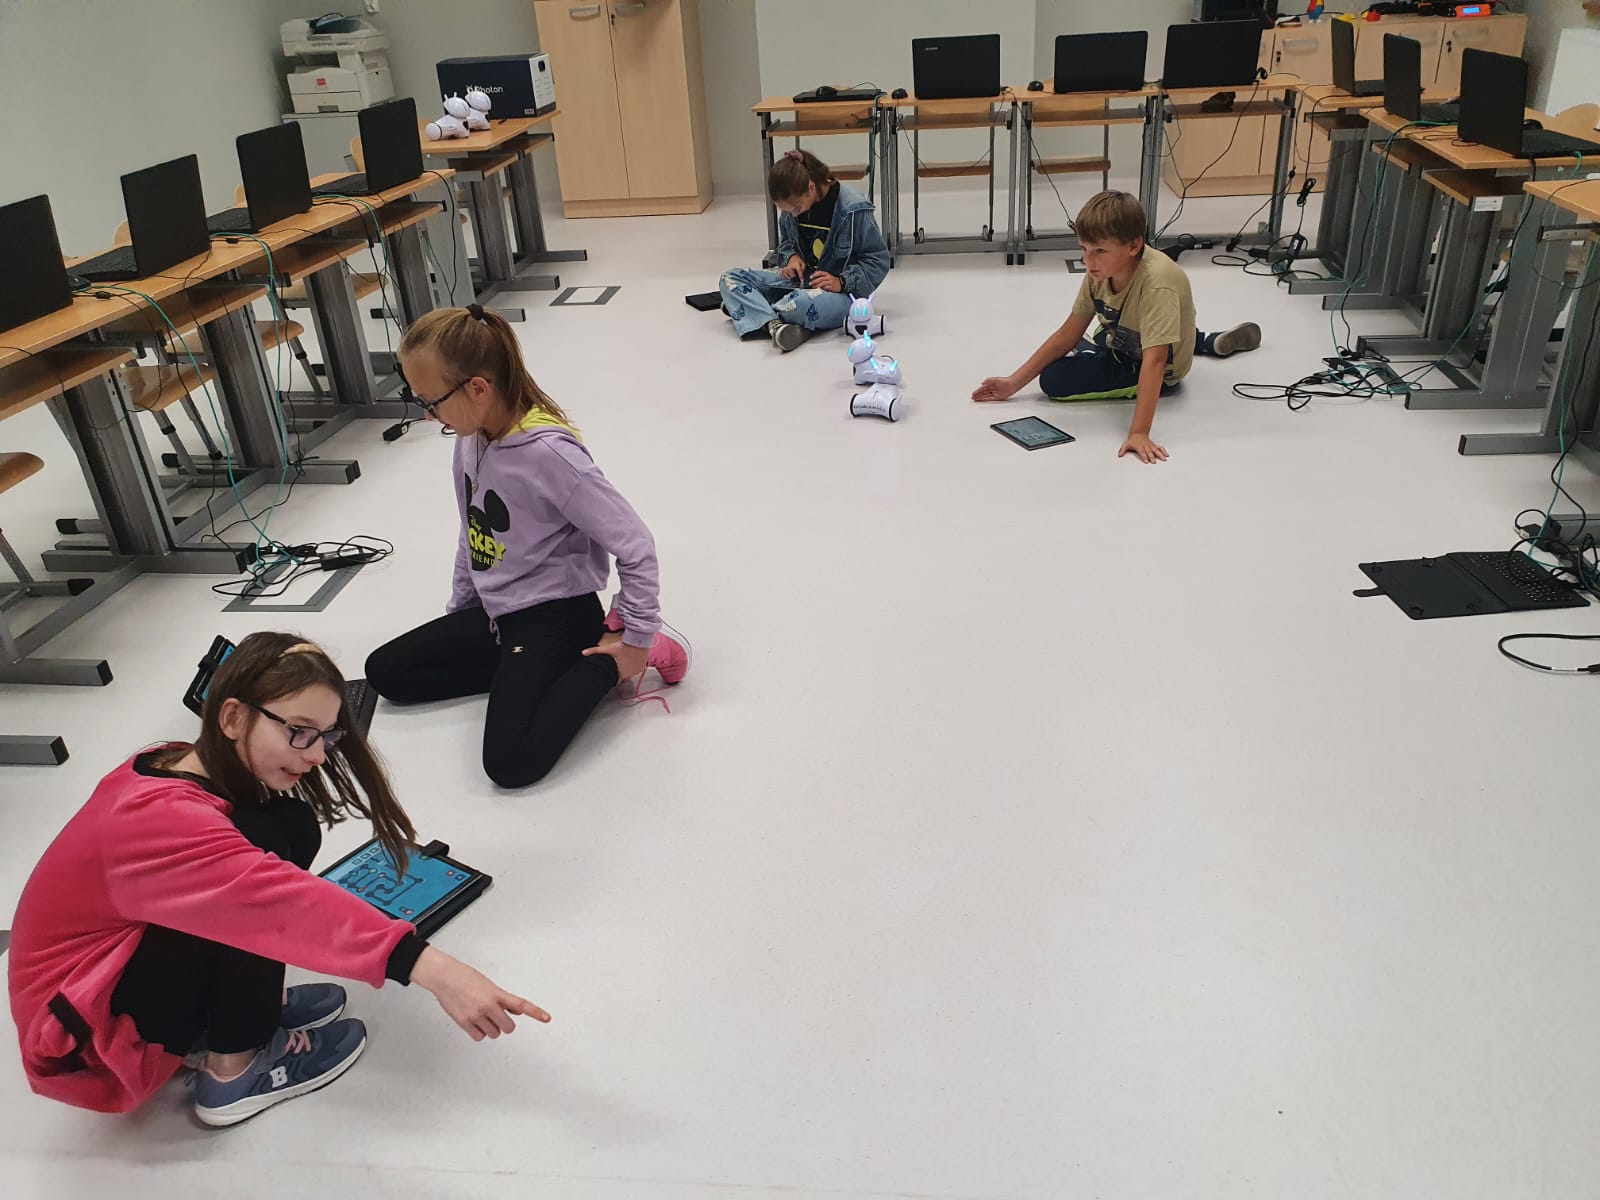 Czwórka uczniów kieruje zdalnymi robotami na podłodze sali lekcyjnej